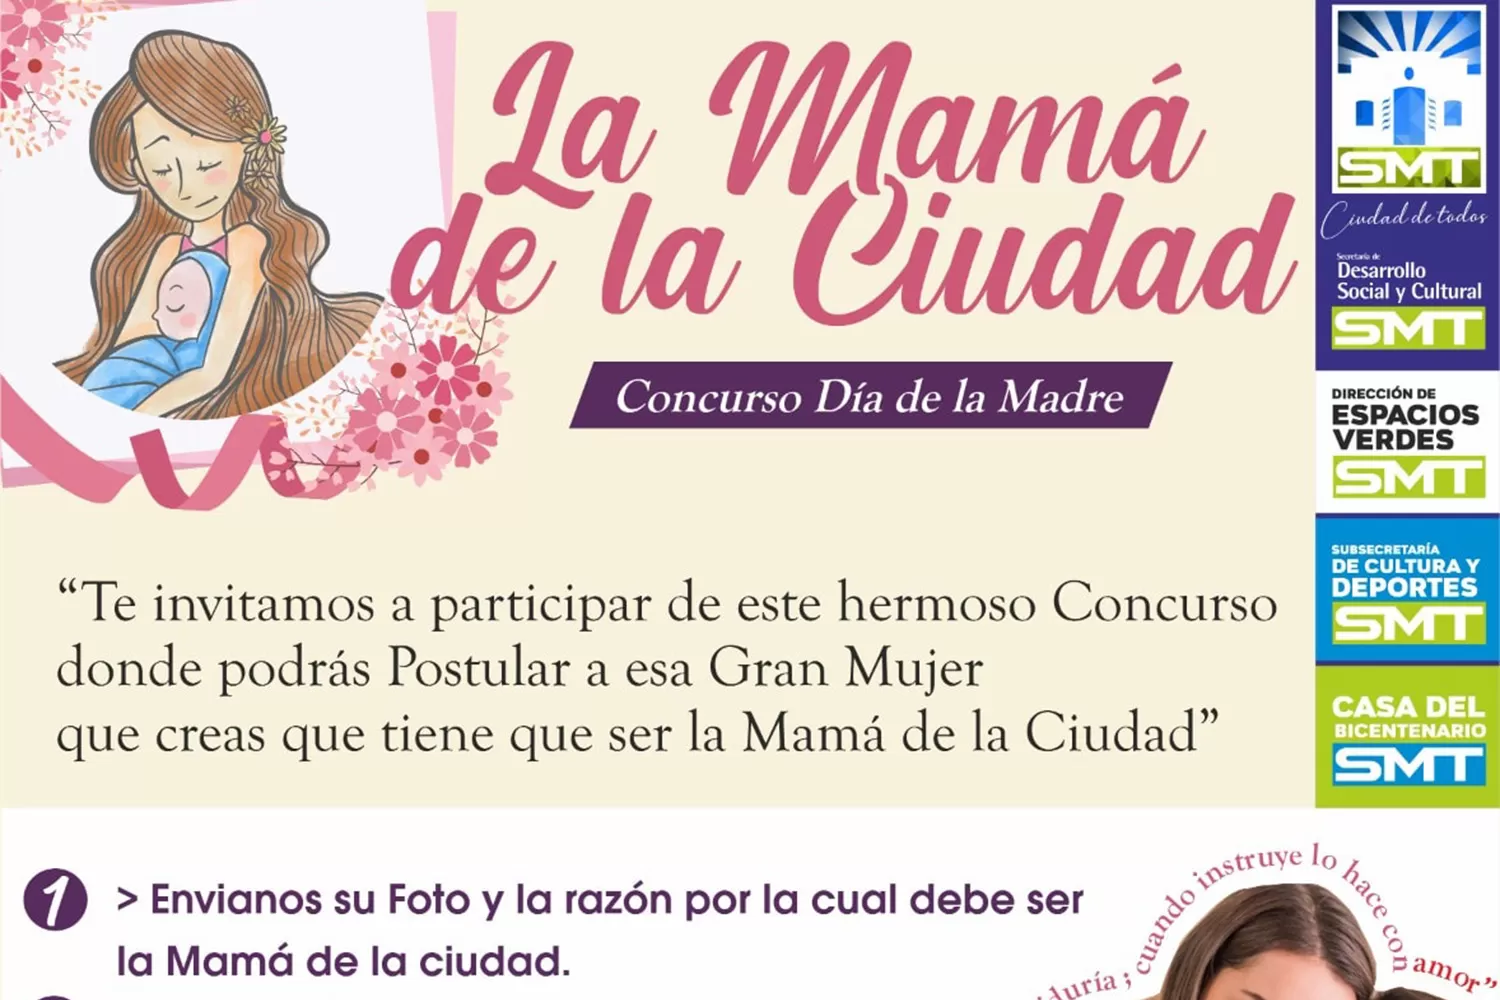 “La mamá de la ciudad”: concurso municipal para rendir homenaje a las madres en su día